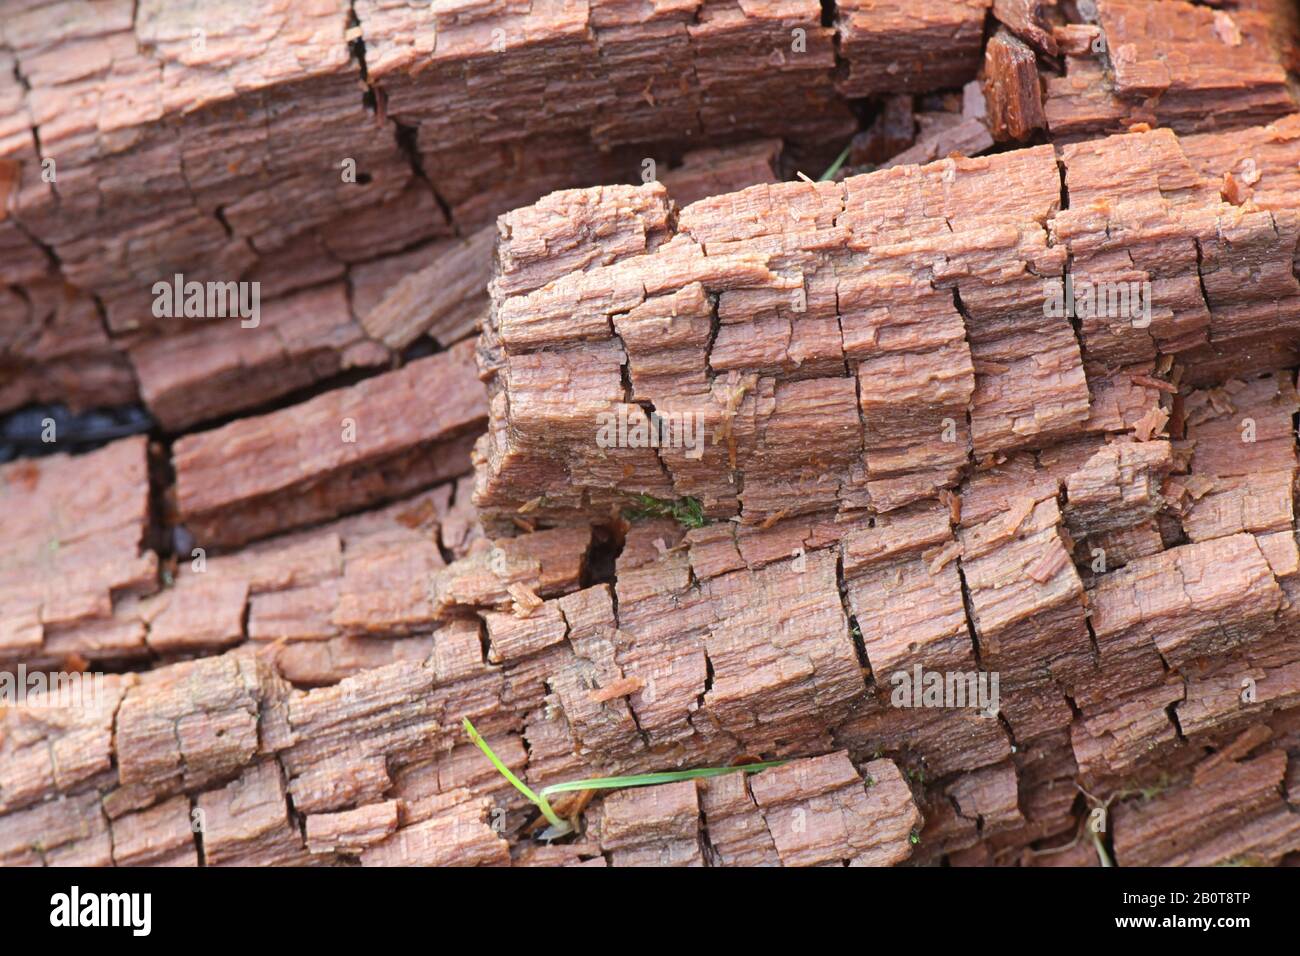 Braunfäule-Pilz zerbrach Hemizellulose und Zellulose und zeigt den typischen kubischen Bruch Stockfoto